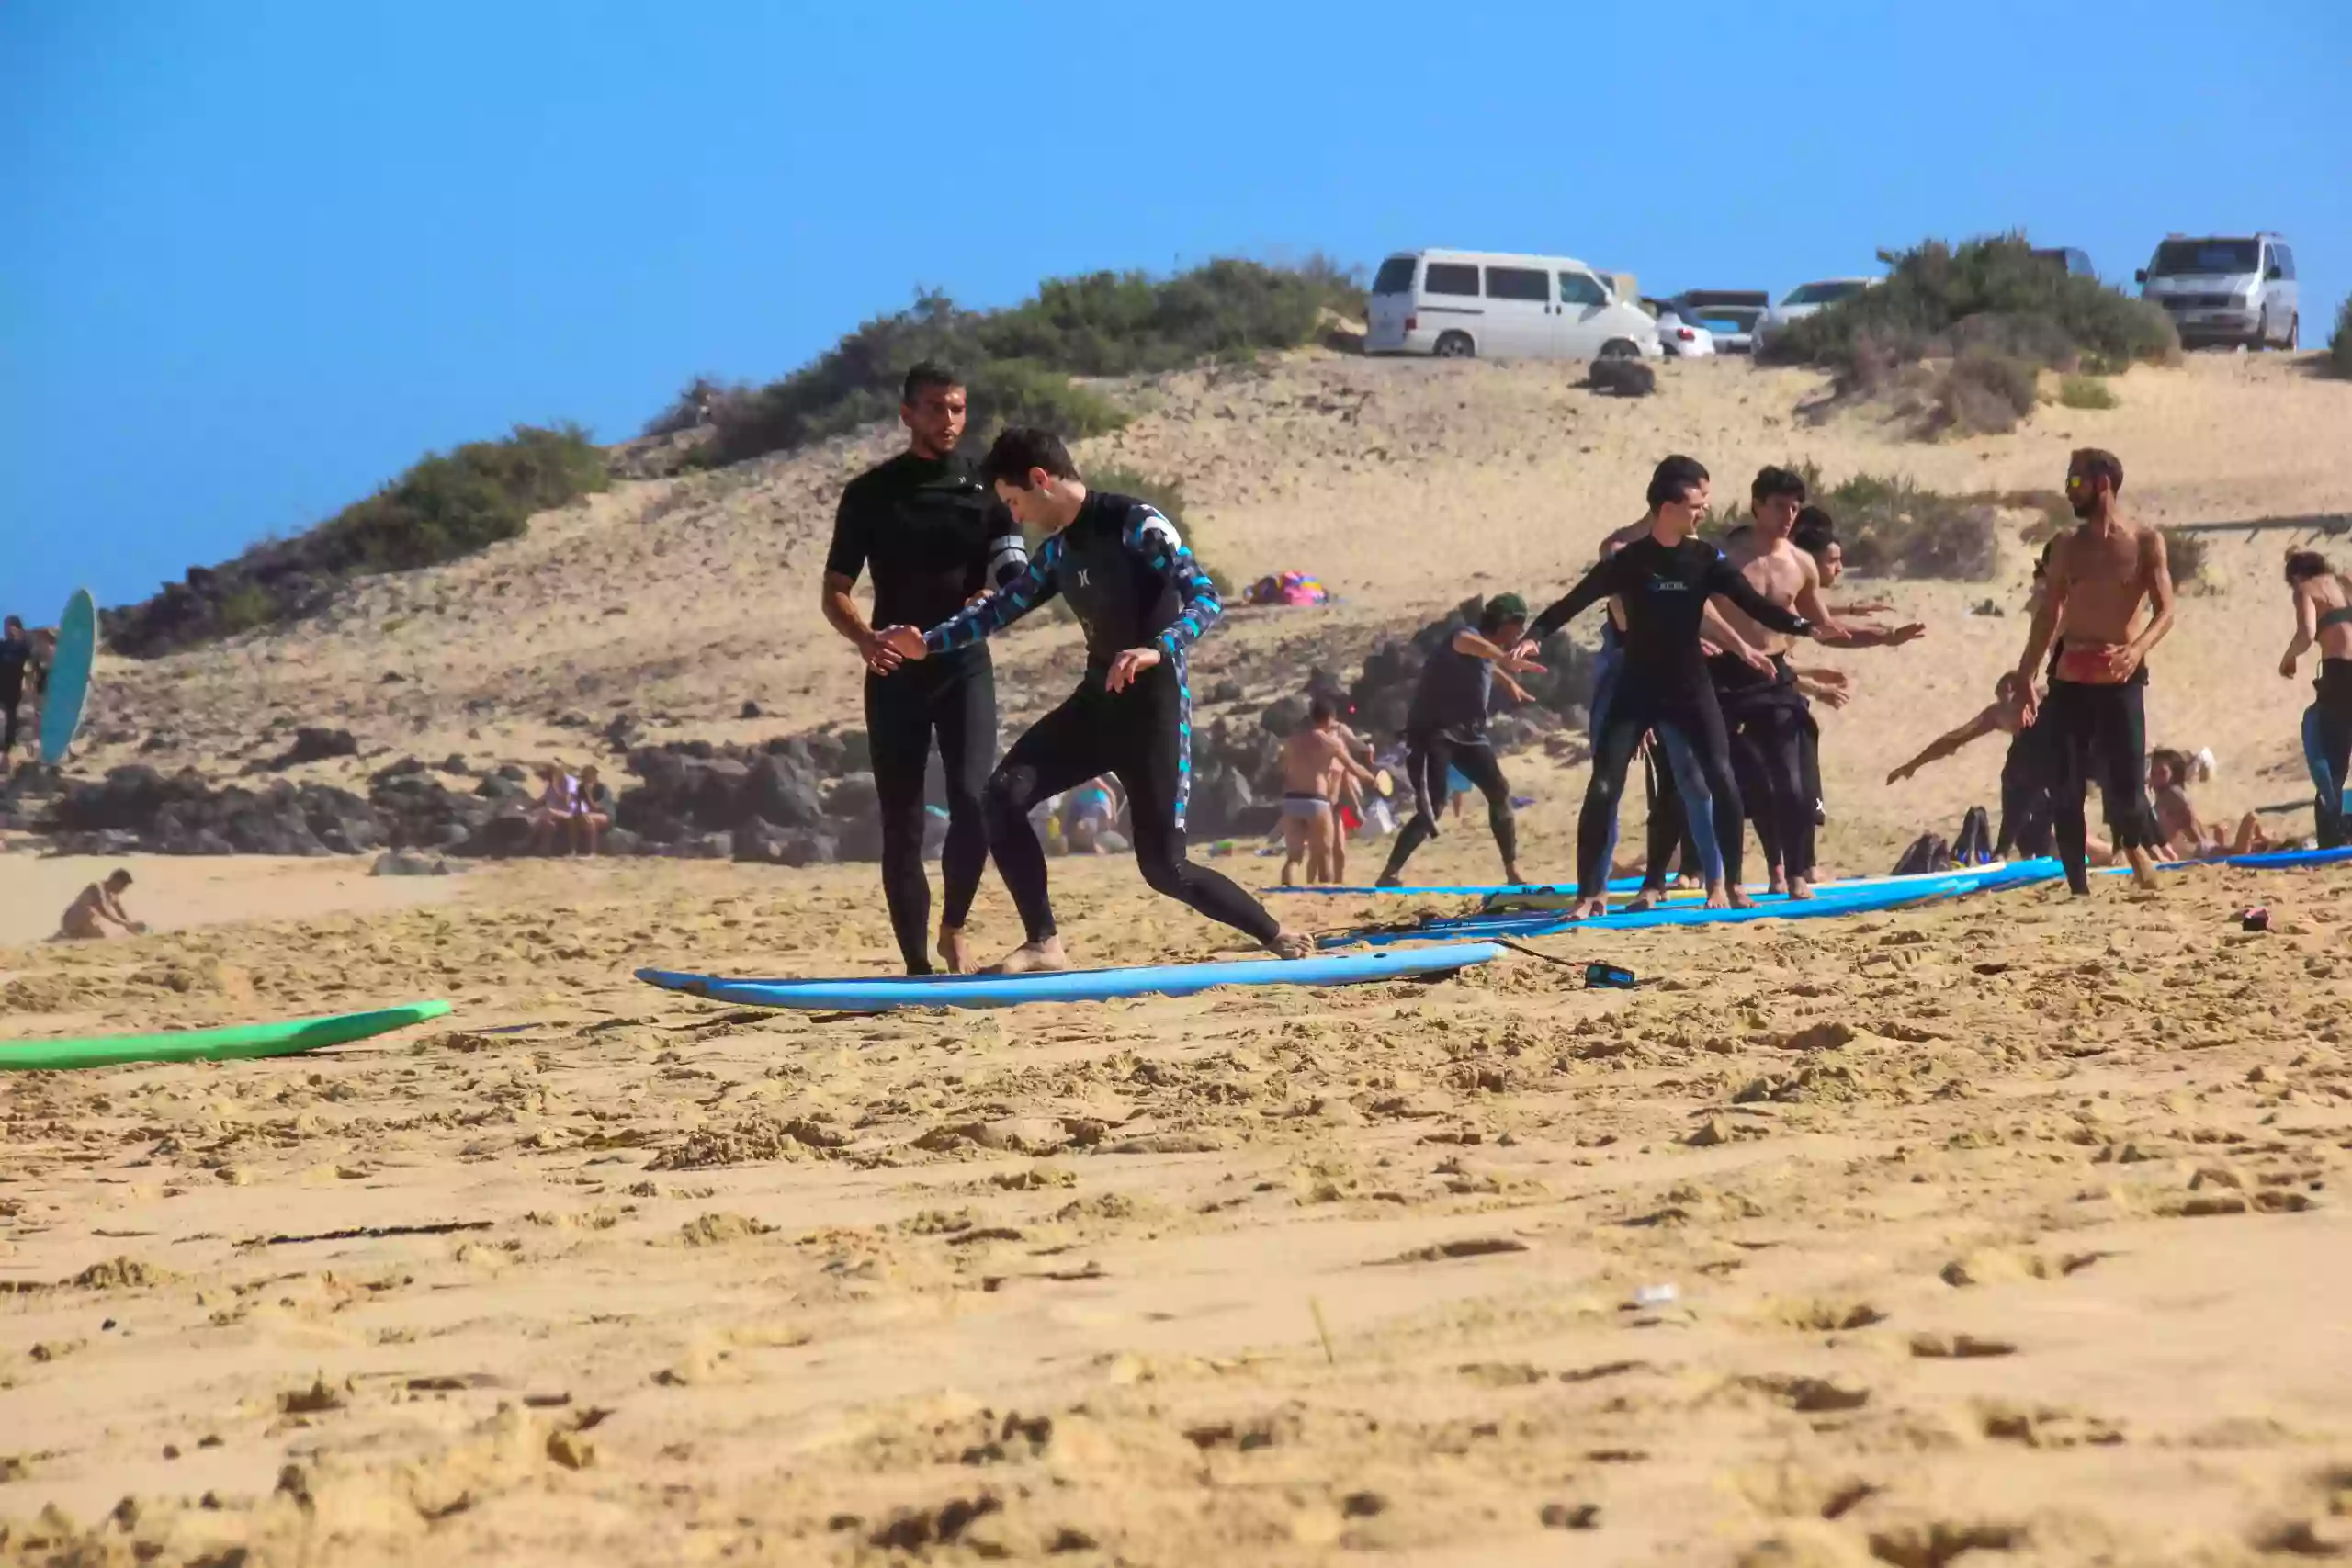 Surfskate academy Fuerteventura ( Corralejo ) Surf & Surfskate Lessons